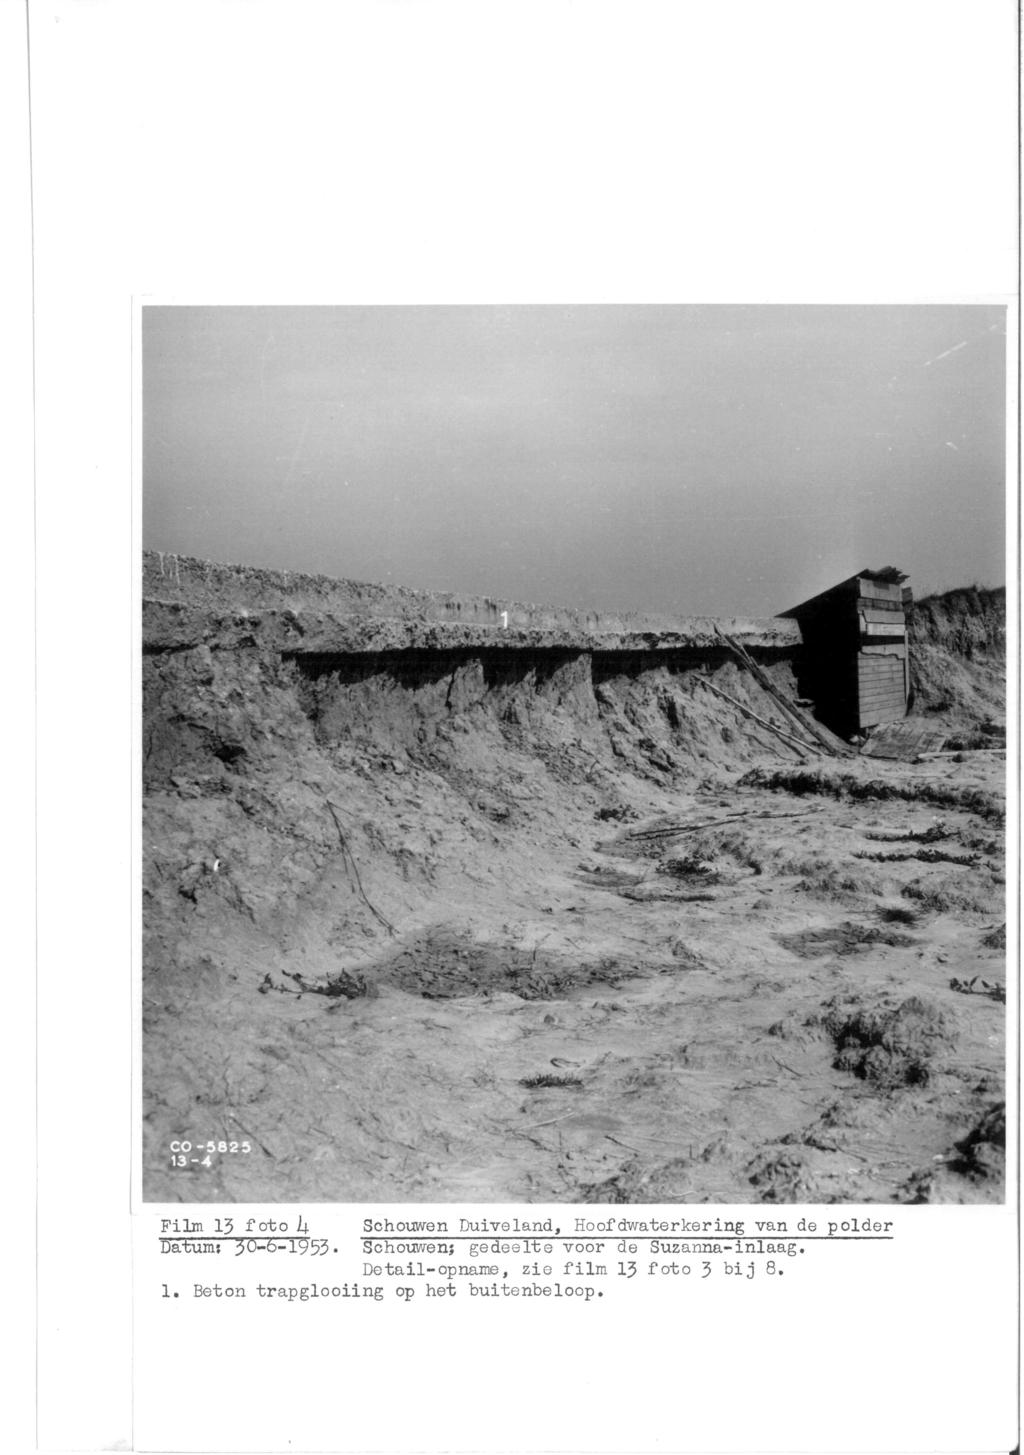 Film 15 foto h Schouwen Duiveland, Hoofdwaterkering van de polder Datum: 30-k-1953«Schouwen; gedeelte